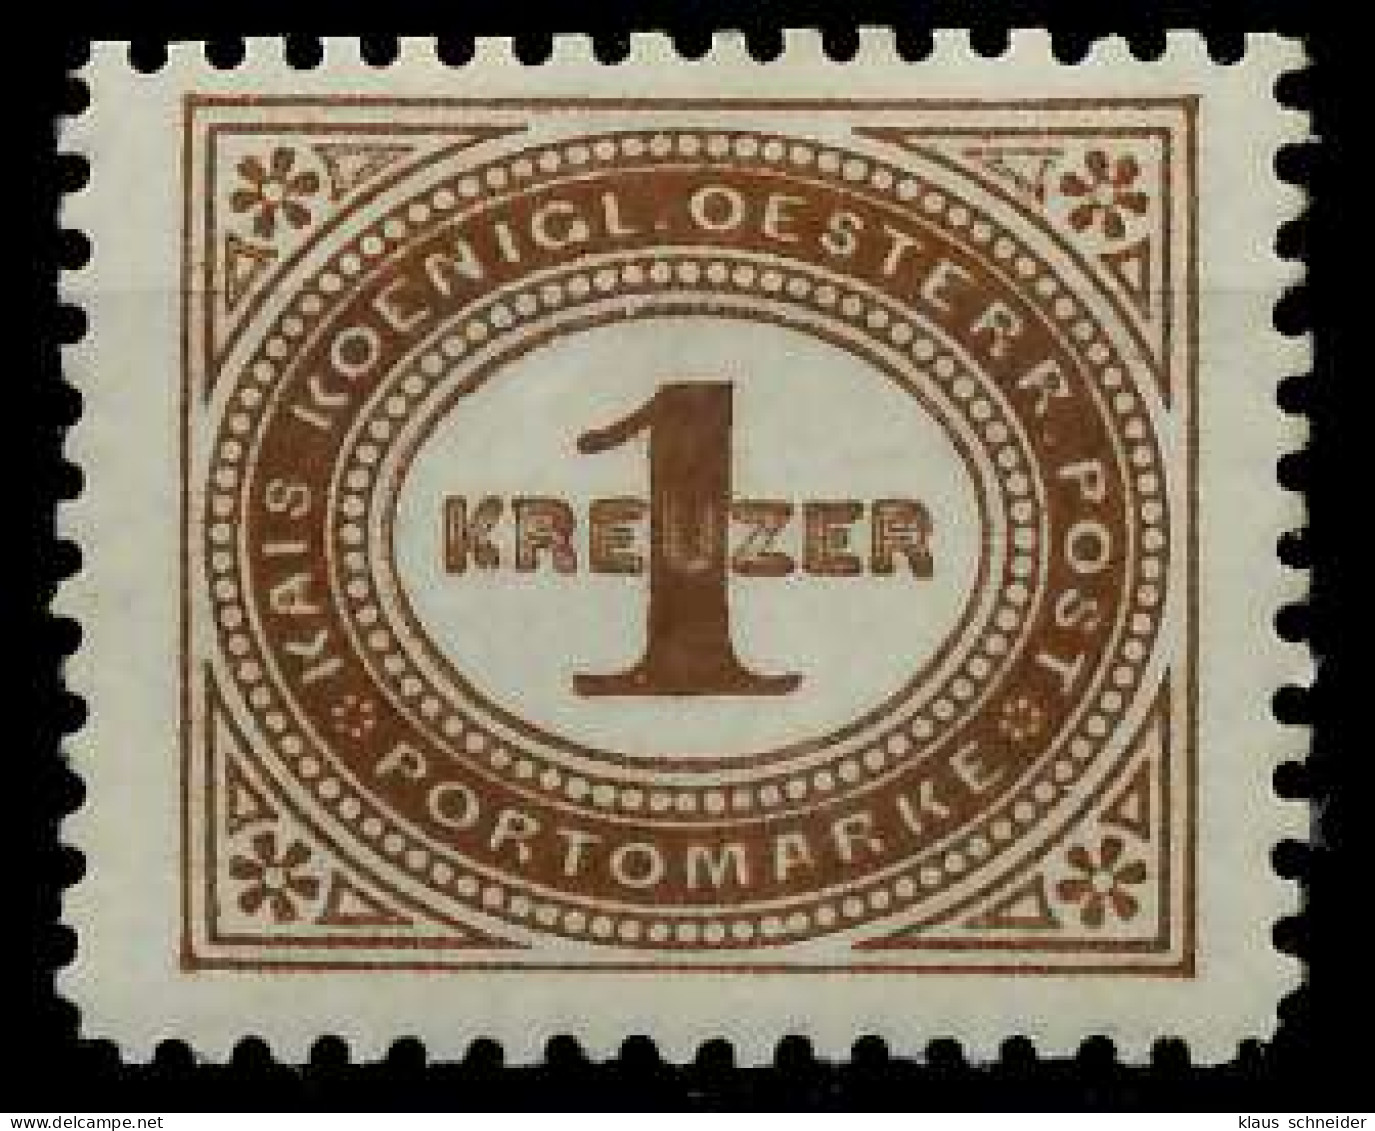 ÖSTERREICH PORTOMARKEN 1894 Nr 1F Postfrisch X7428C6 - Impuestos